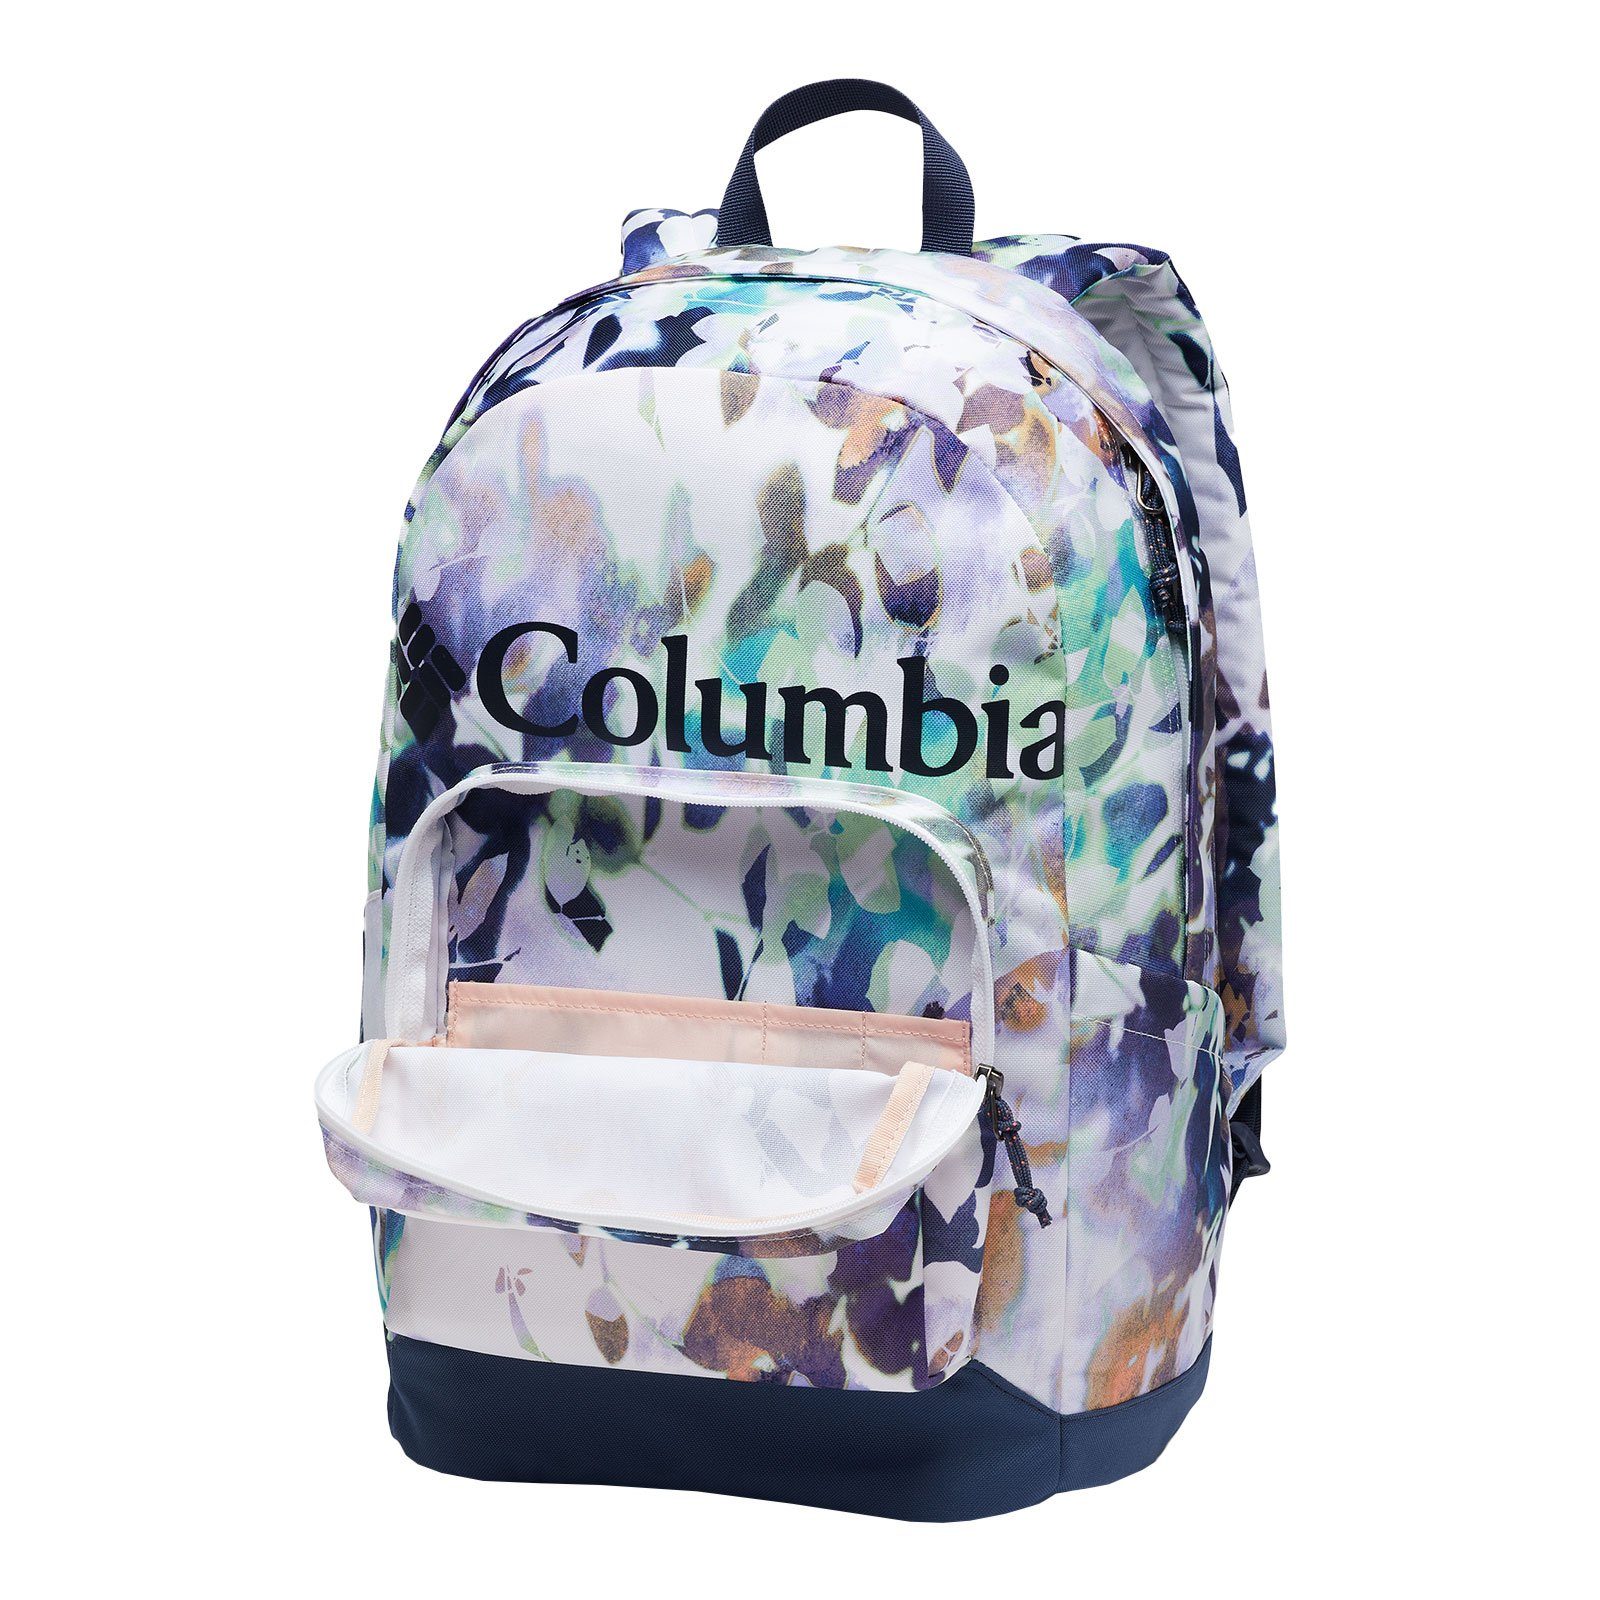 Columbia Freizeitrucksack Backpack, white Zigzag™ mit 22L / nocturnal 102 impressions Laptopfach